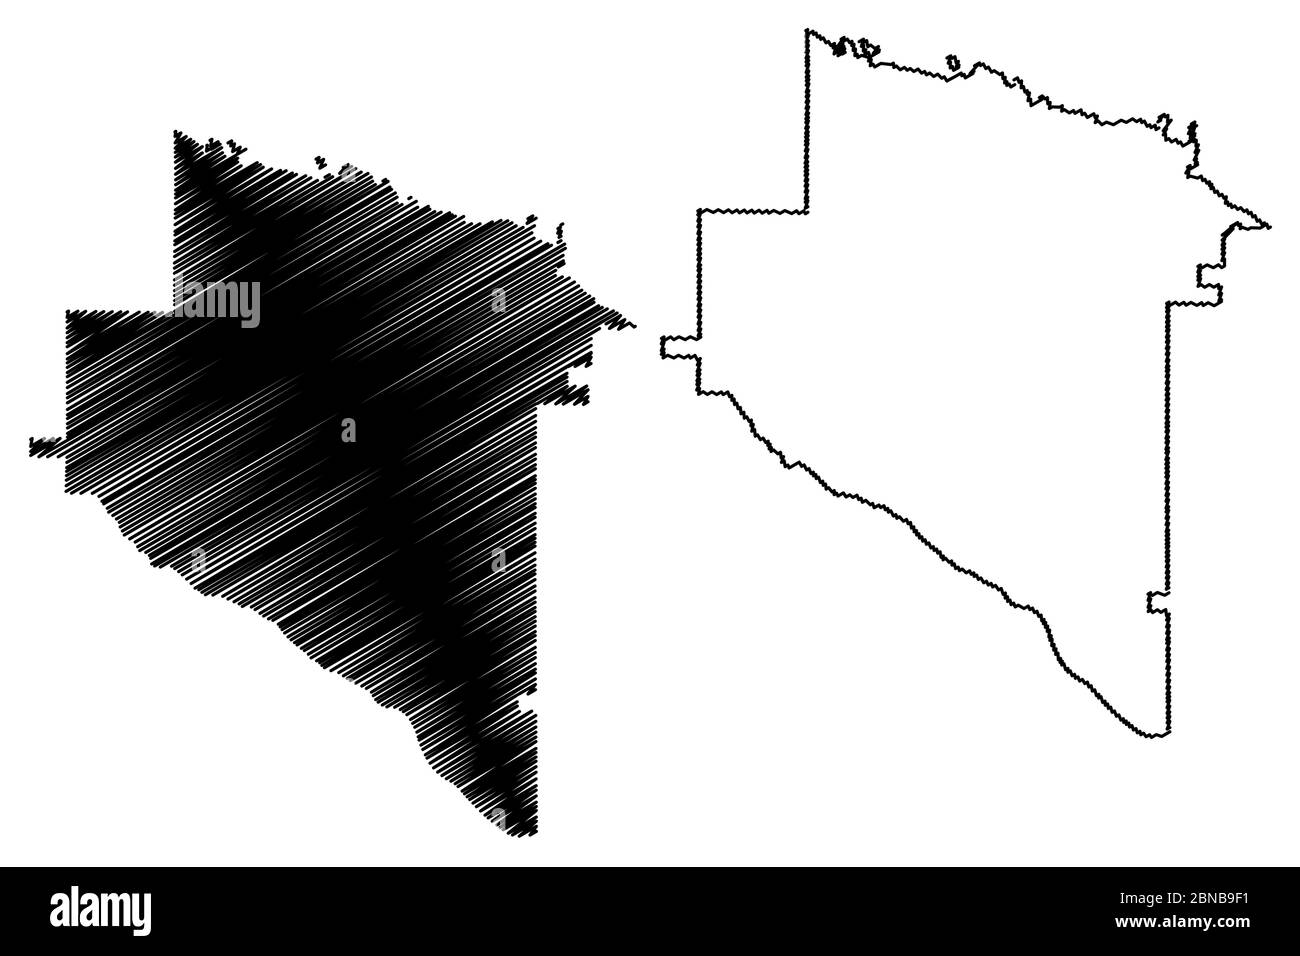 Appling County, Georgia (Stati Uniti, Stati Uniti d'America, Stati Uniti, Stati Uniti, Stati Uniti) mappa illustrazione vettoriale, schizzo di scarpetta appling map Illustrazione Vettoriale